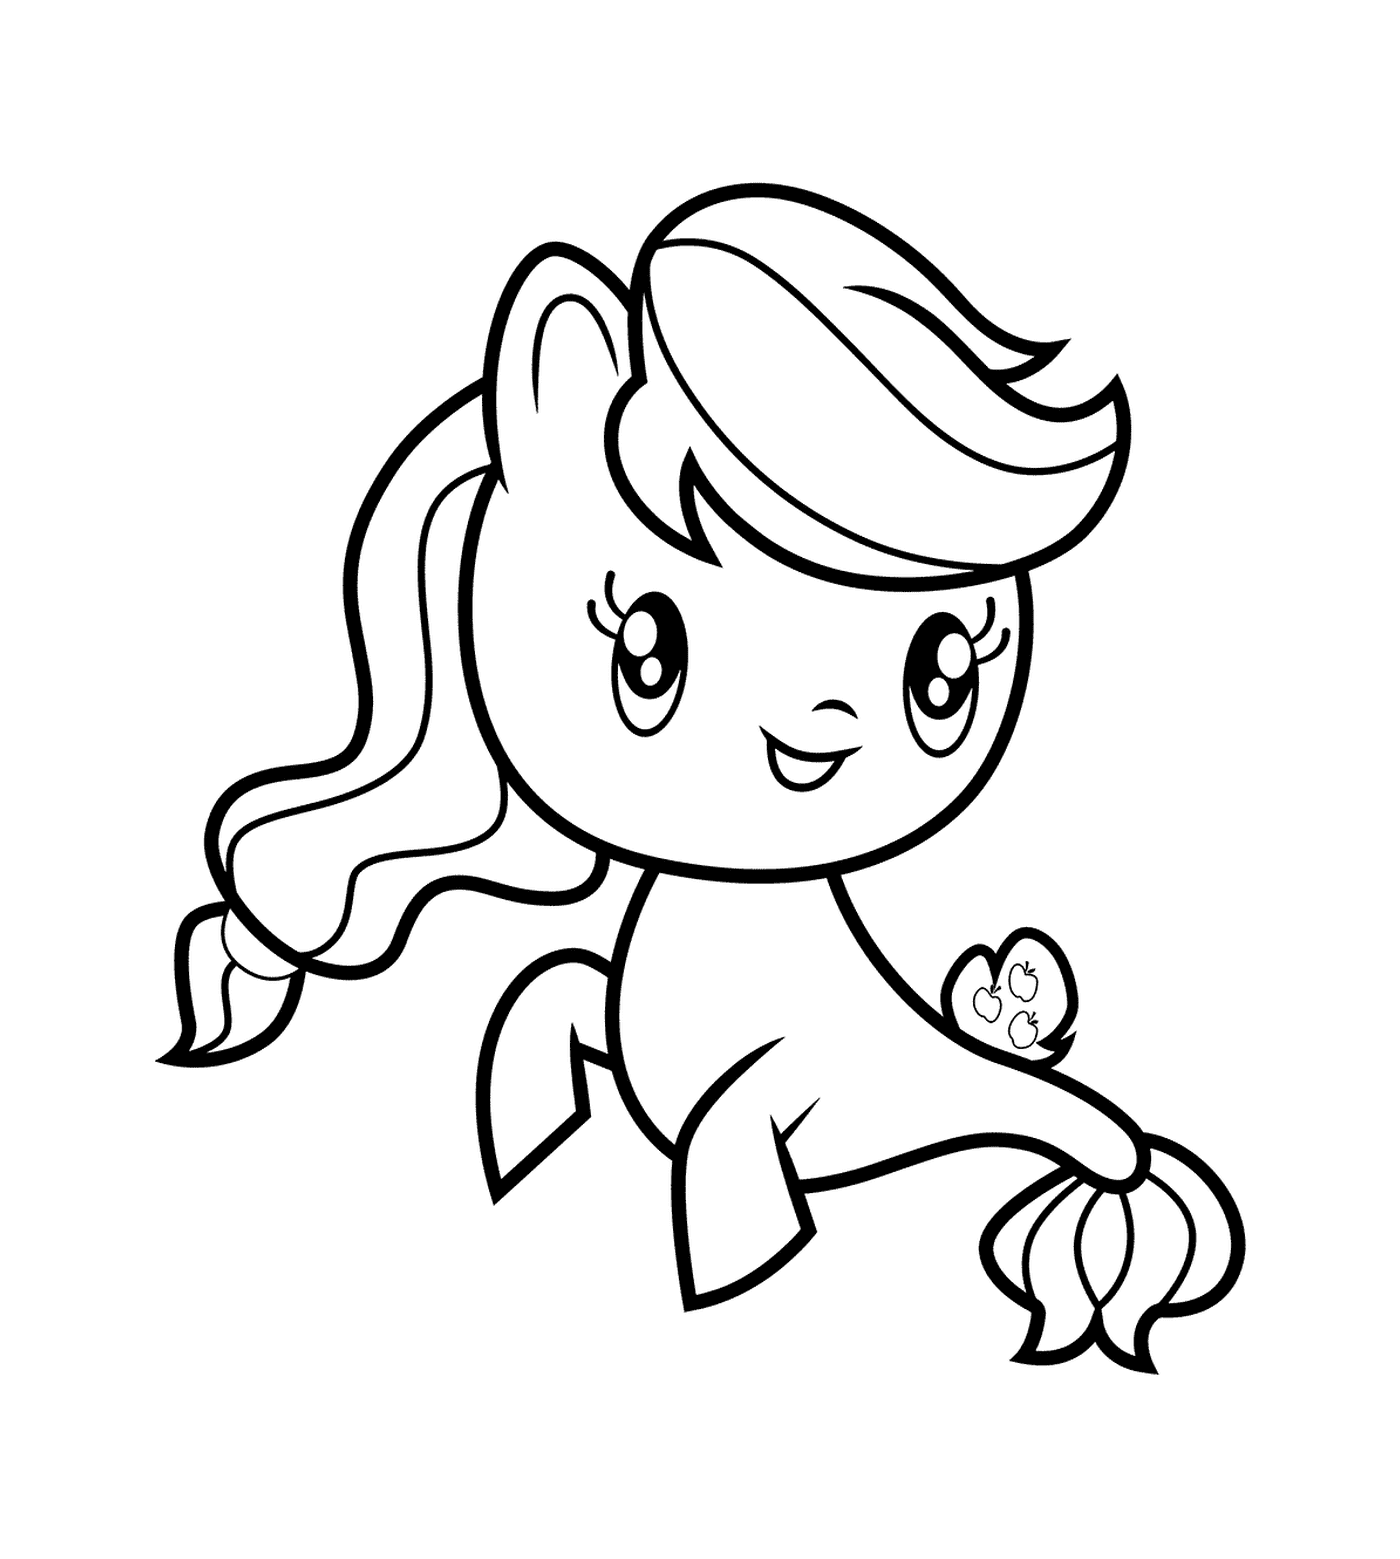  Applejack Pony of Sea da Coleção Cutie Mark 